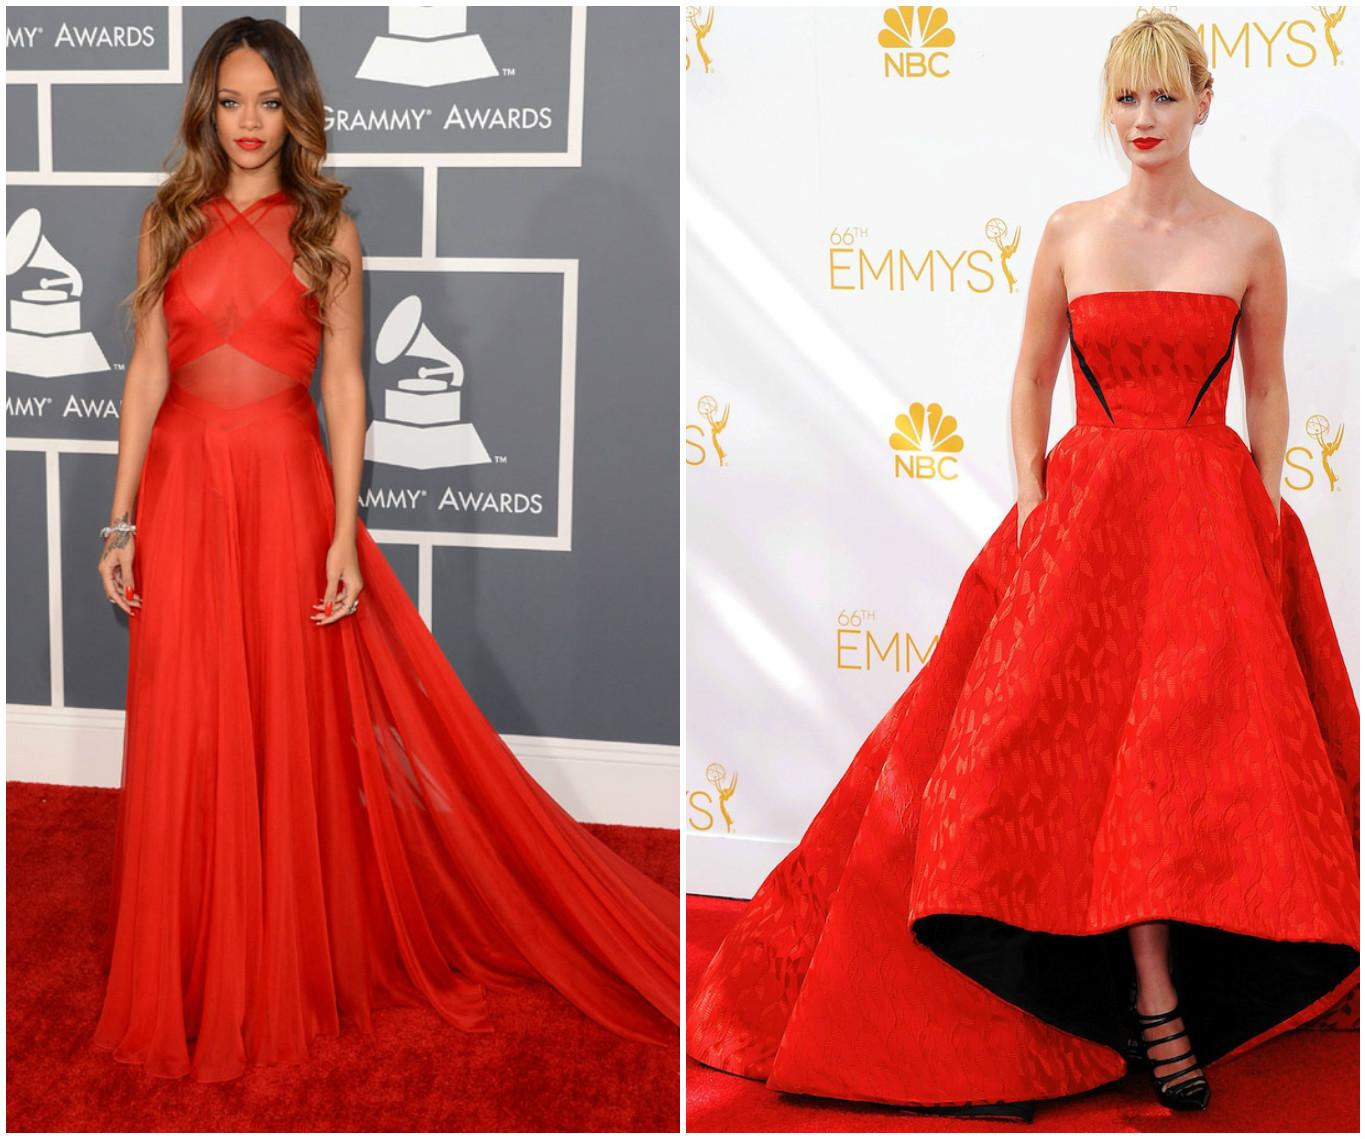 Dacă ați decis să îmbrăcați de Revelion o rochie de culoare roșie…